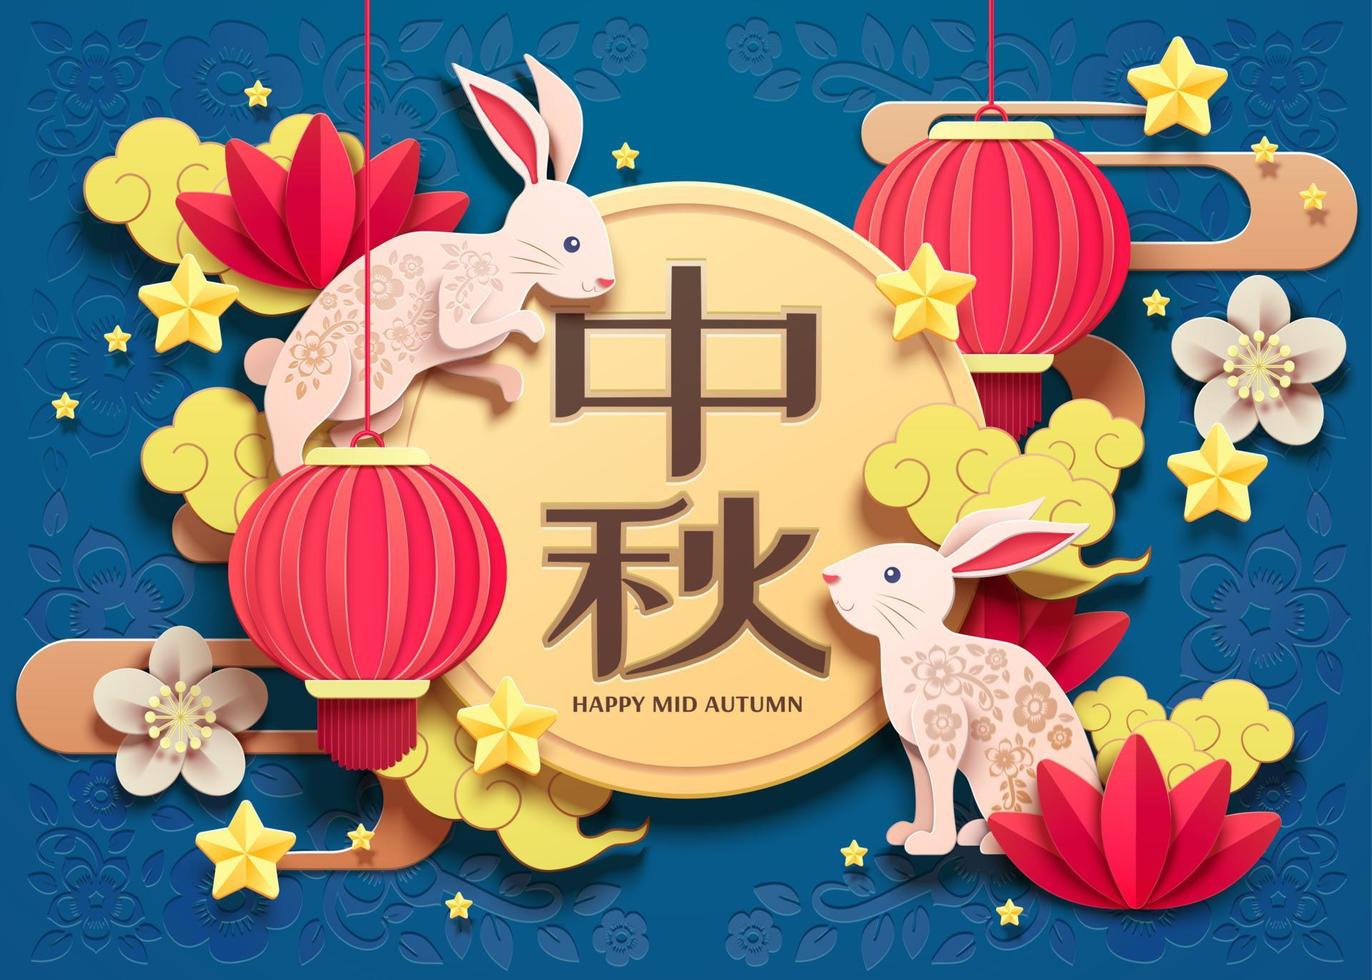 conception d'art papier joyeux festival de la mi-automne avec des éléments de lapin blanc et de lanternes sur fond bleu, nom de vacances écrit en mots chinois vecteur